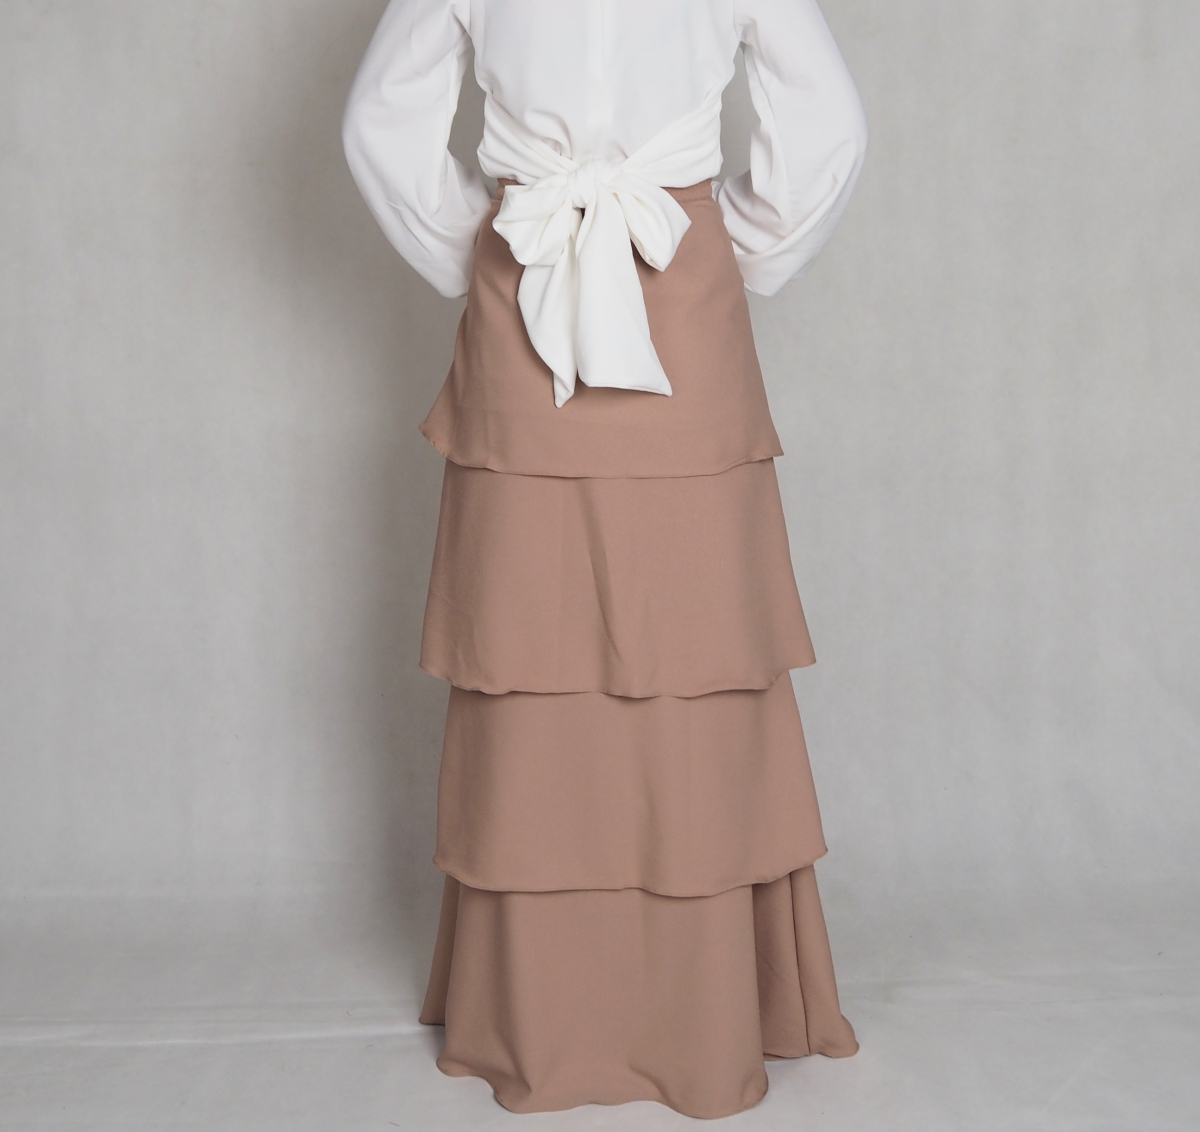 SW4868 Fashion Skirt (Plus Size) Dark Brown